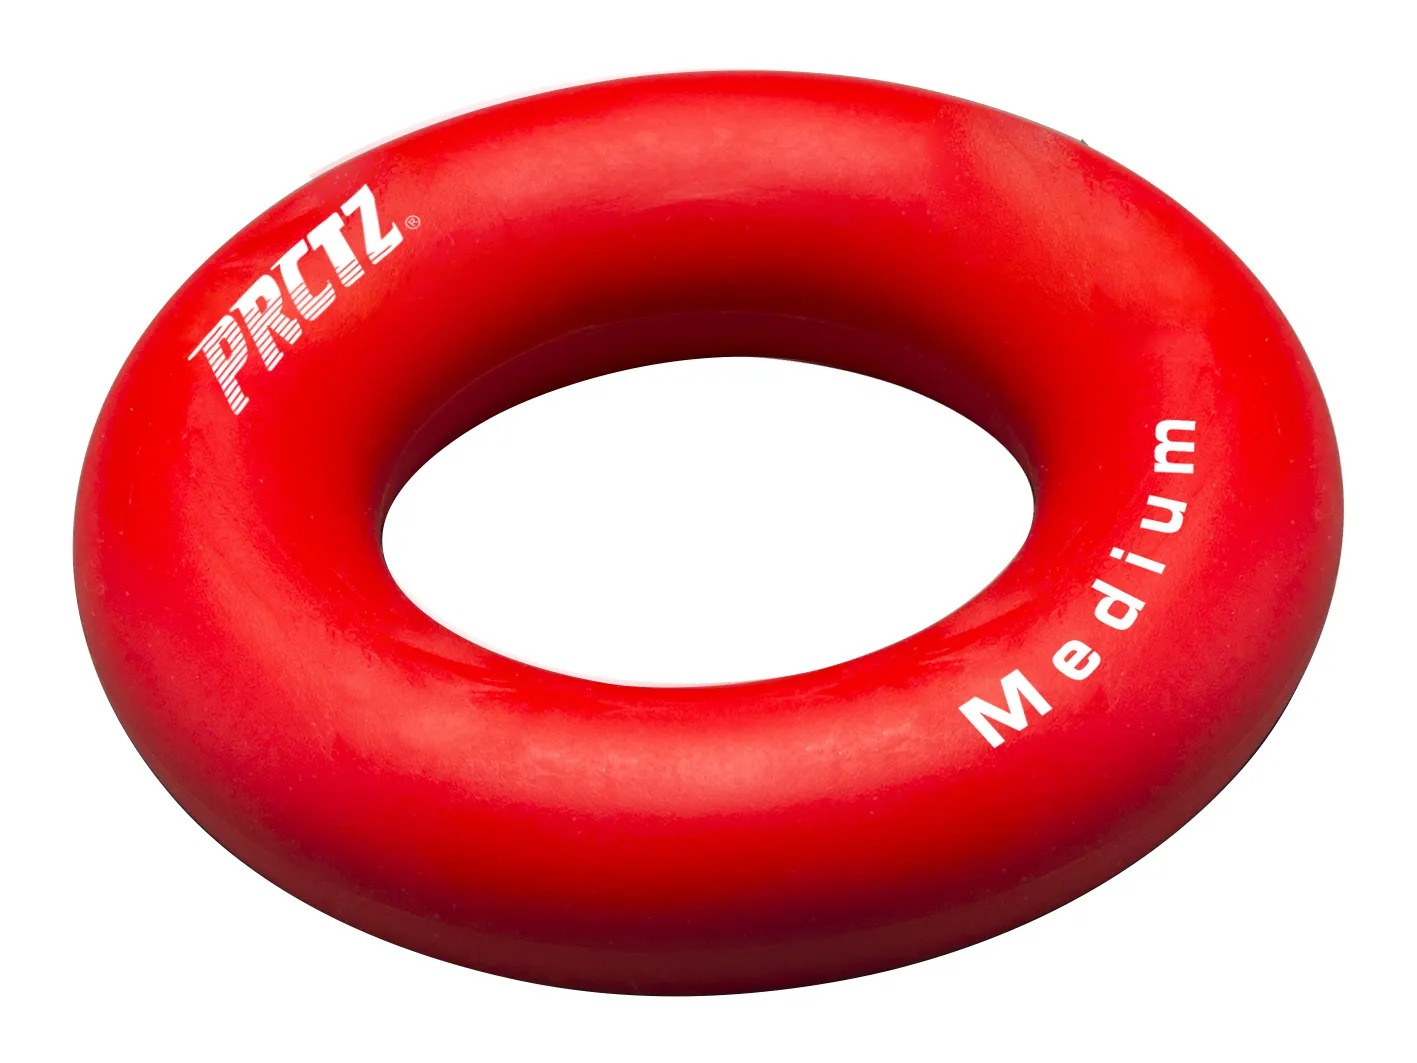 PRCTZ Power Gripping ring medium, среднее сопротивление из каталога кистевых эспандеров в Санкт-Петербурге по цене 490 ₽